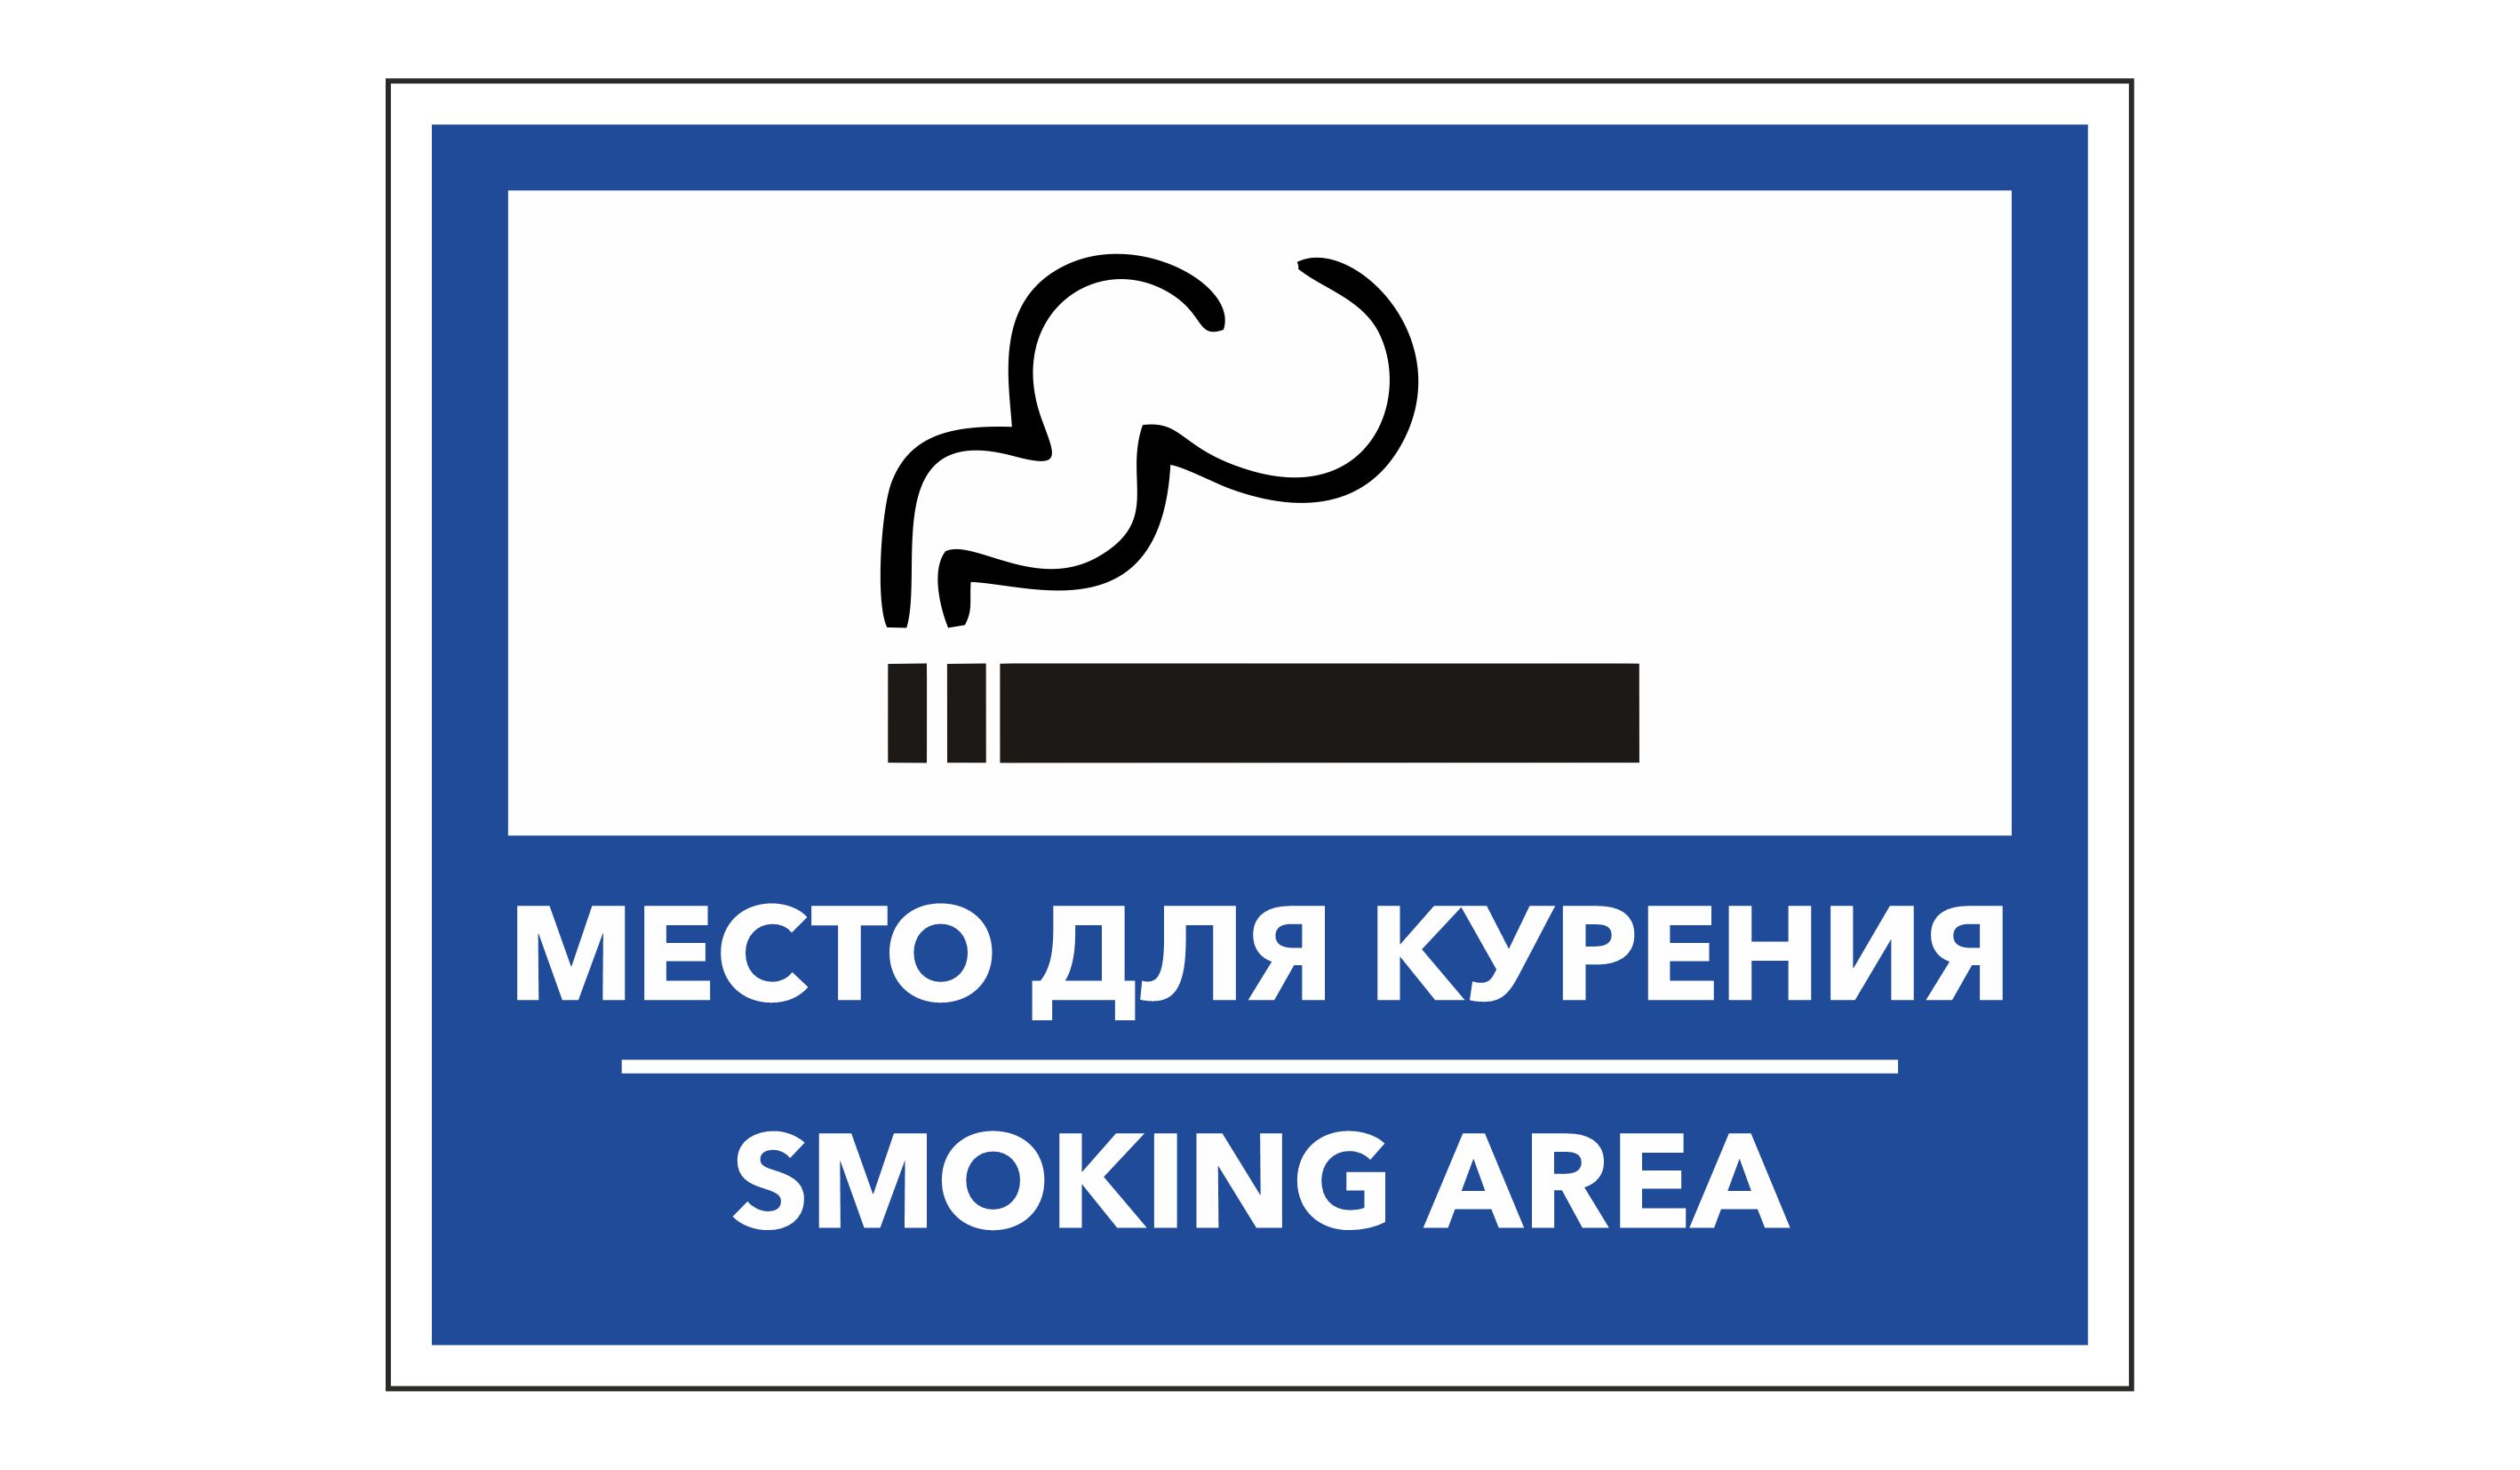 Сэр школа не место. Место для курения. Место для курения знак. Указатель место для курения. Вывеска место для курения.